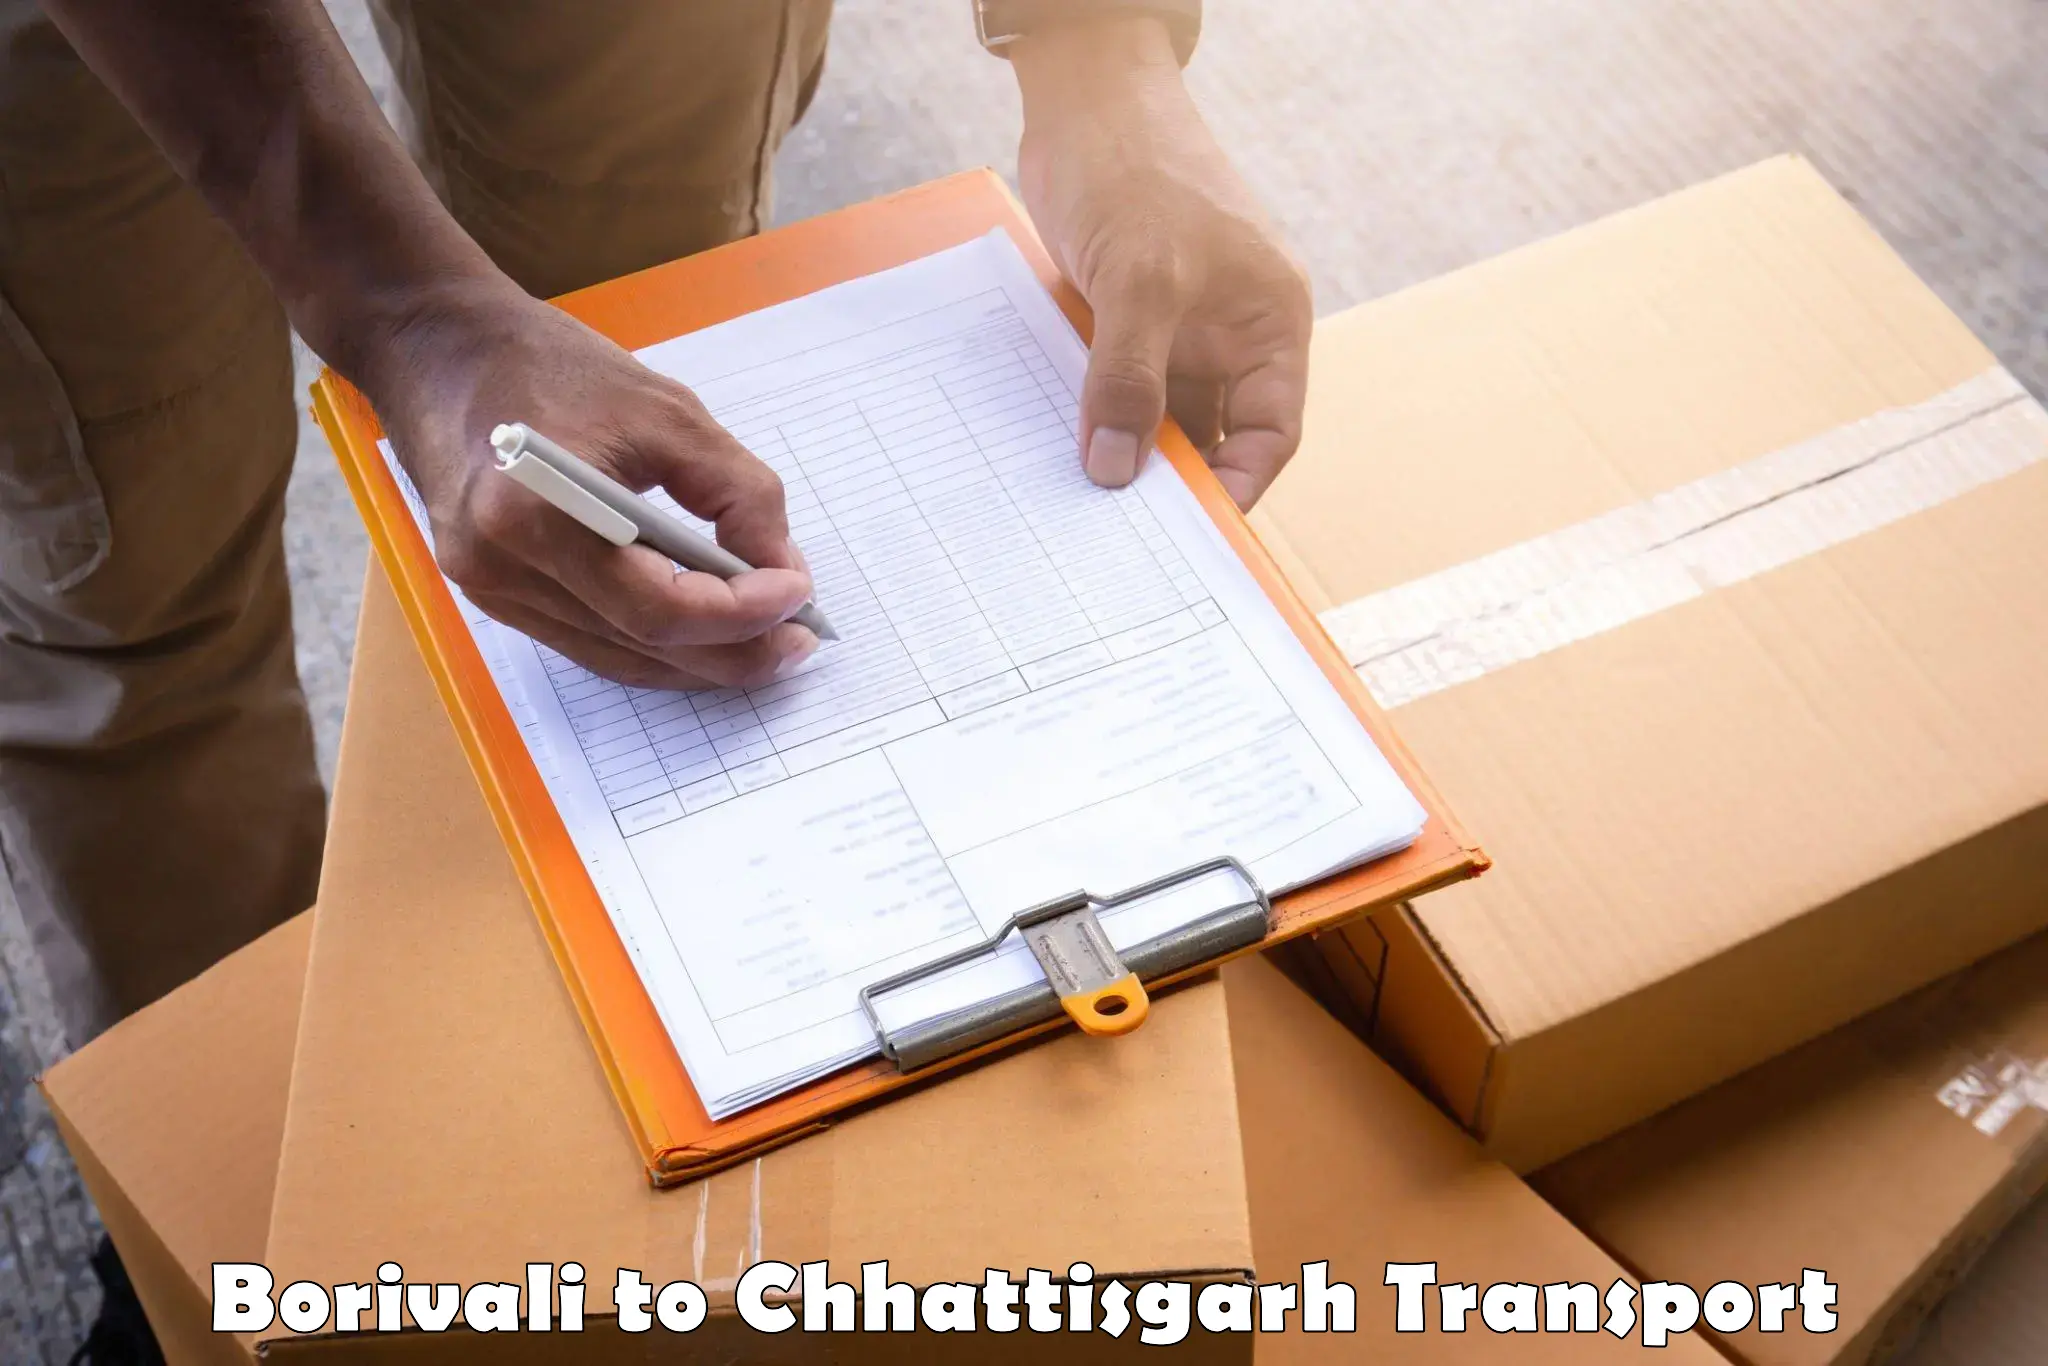 Goods delivery service Borivali to Raigarh